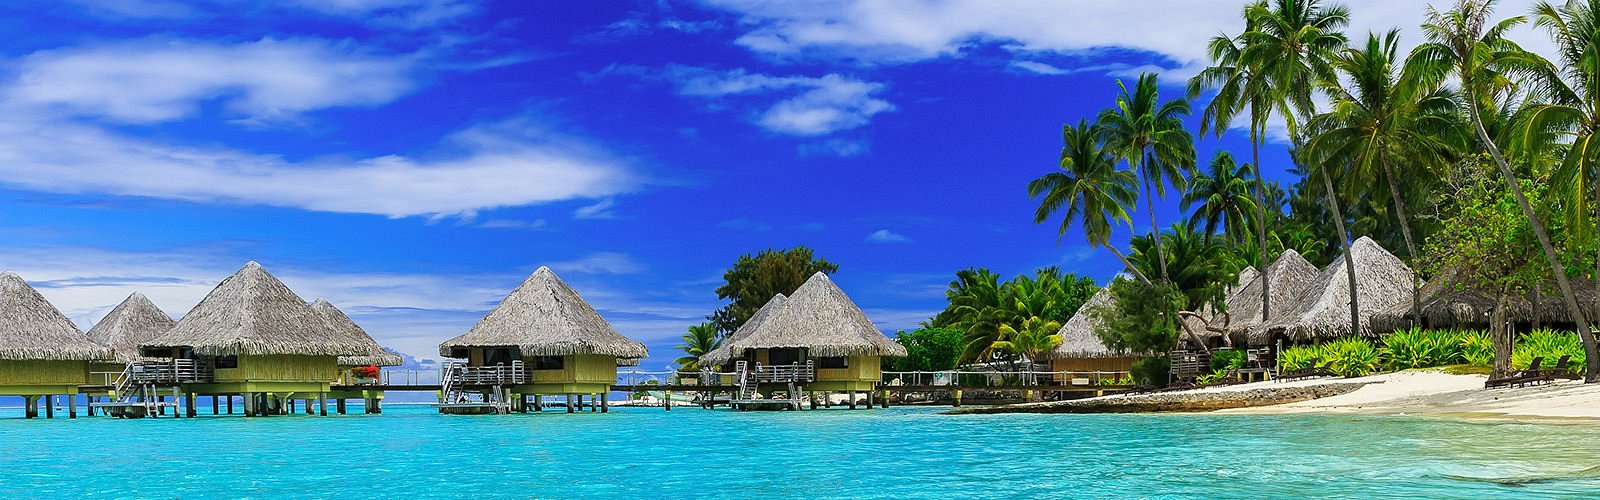 aften respons sfære THE 10 BEST Hotels in Bora Bora for 2023 (from $110) - Tripadvisor